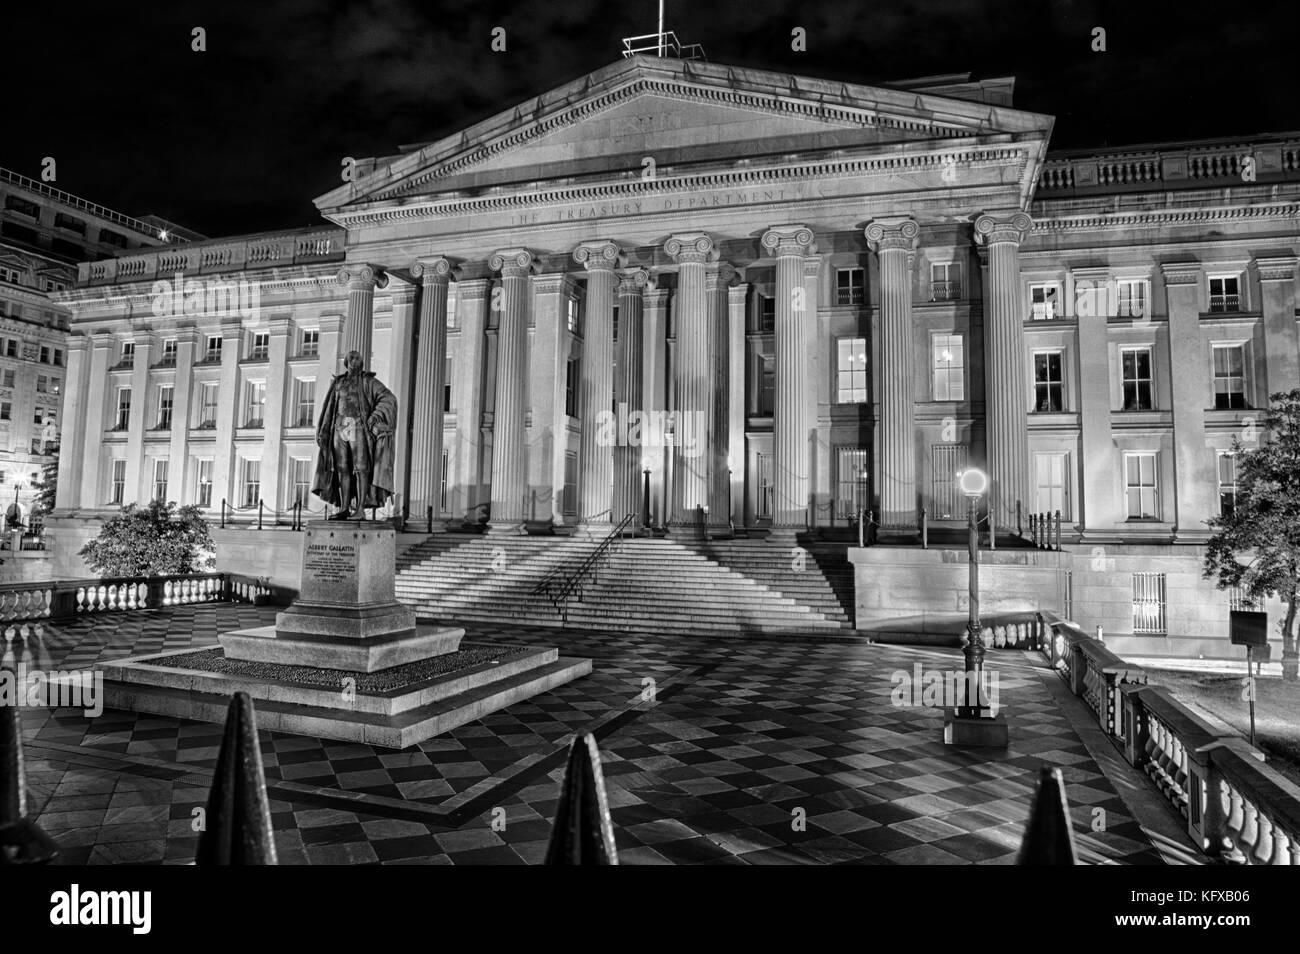 Septembre 12, 2017, Washington, DC, USA : le trésor américain building éclairé la nuit avec la statue de Gallatin personnalités hors de l'avant. Banque D'Images